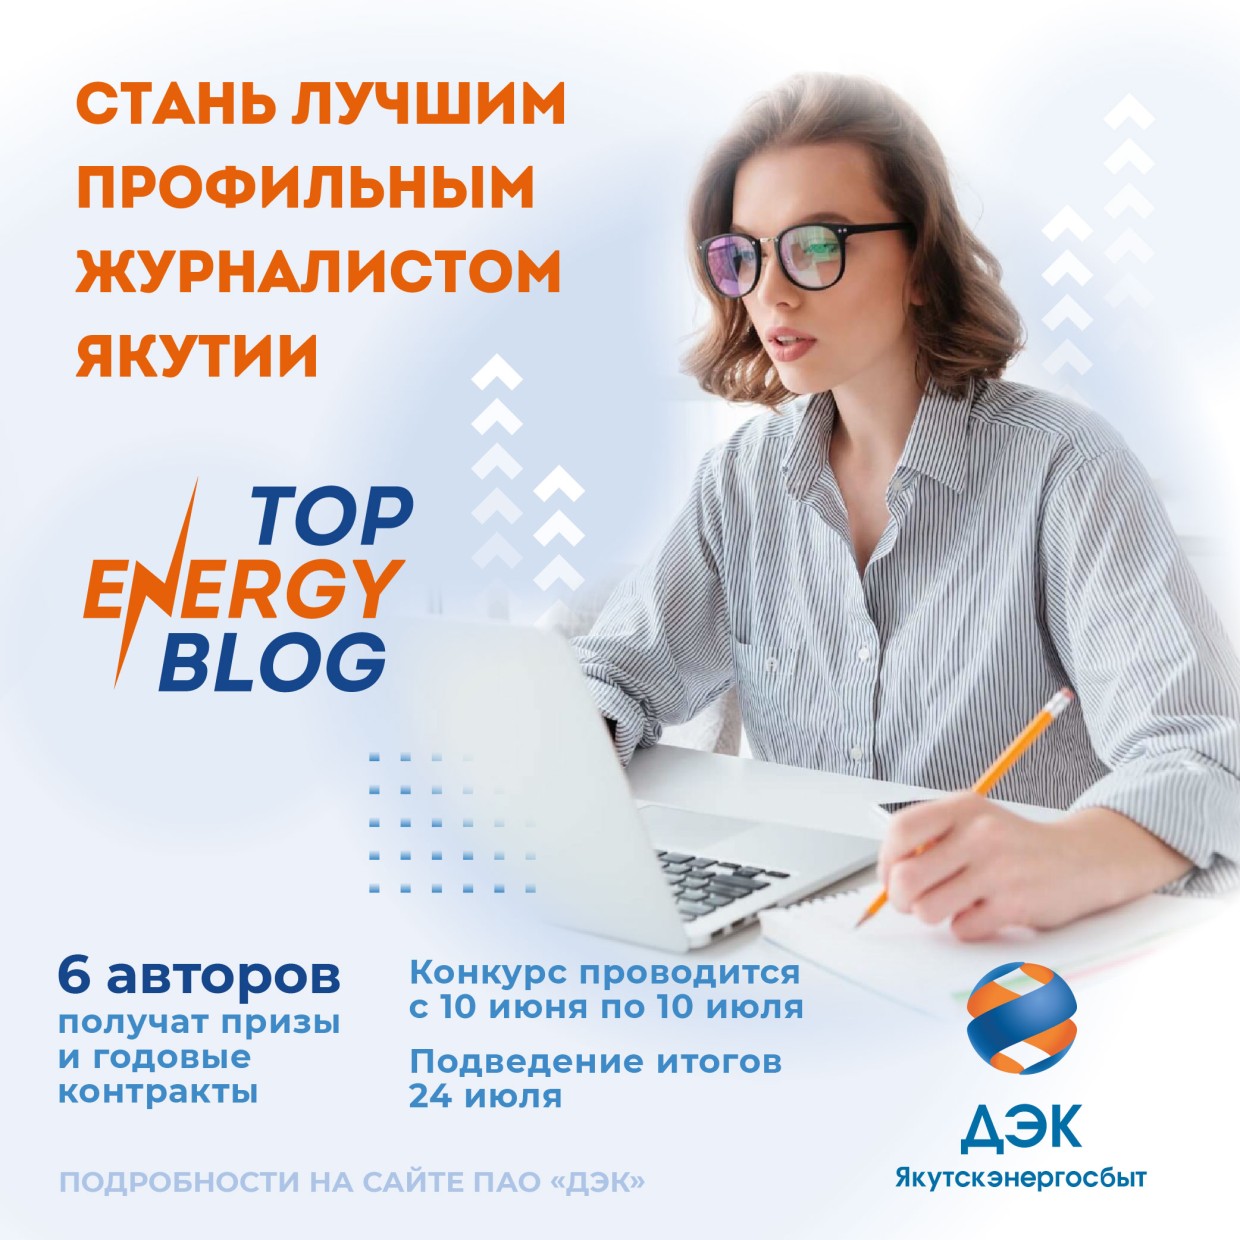 ПАО «ДЭК» объявляет конкурс для журналистов и блогеров Якутии